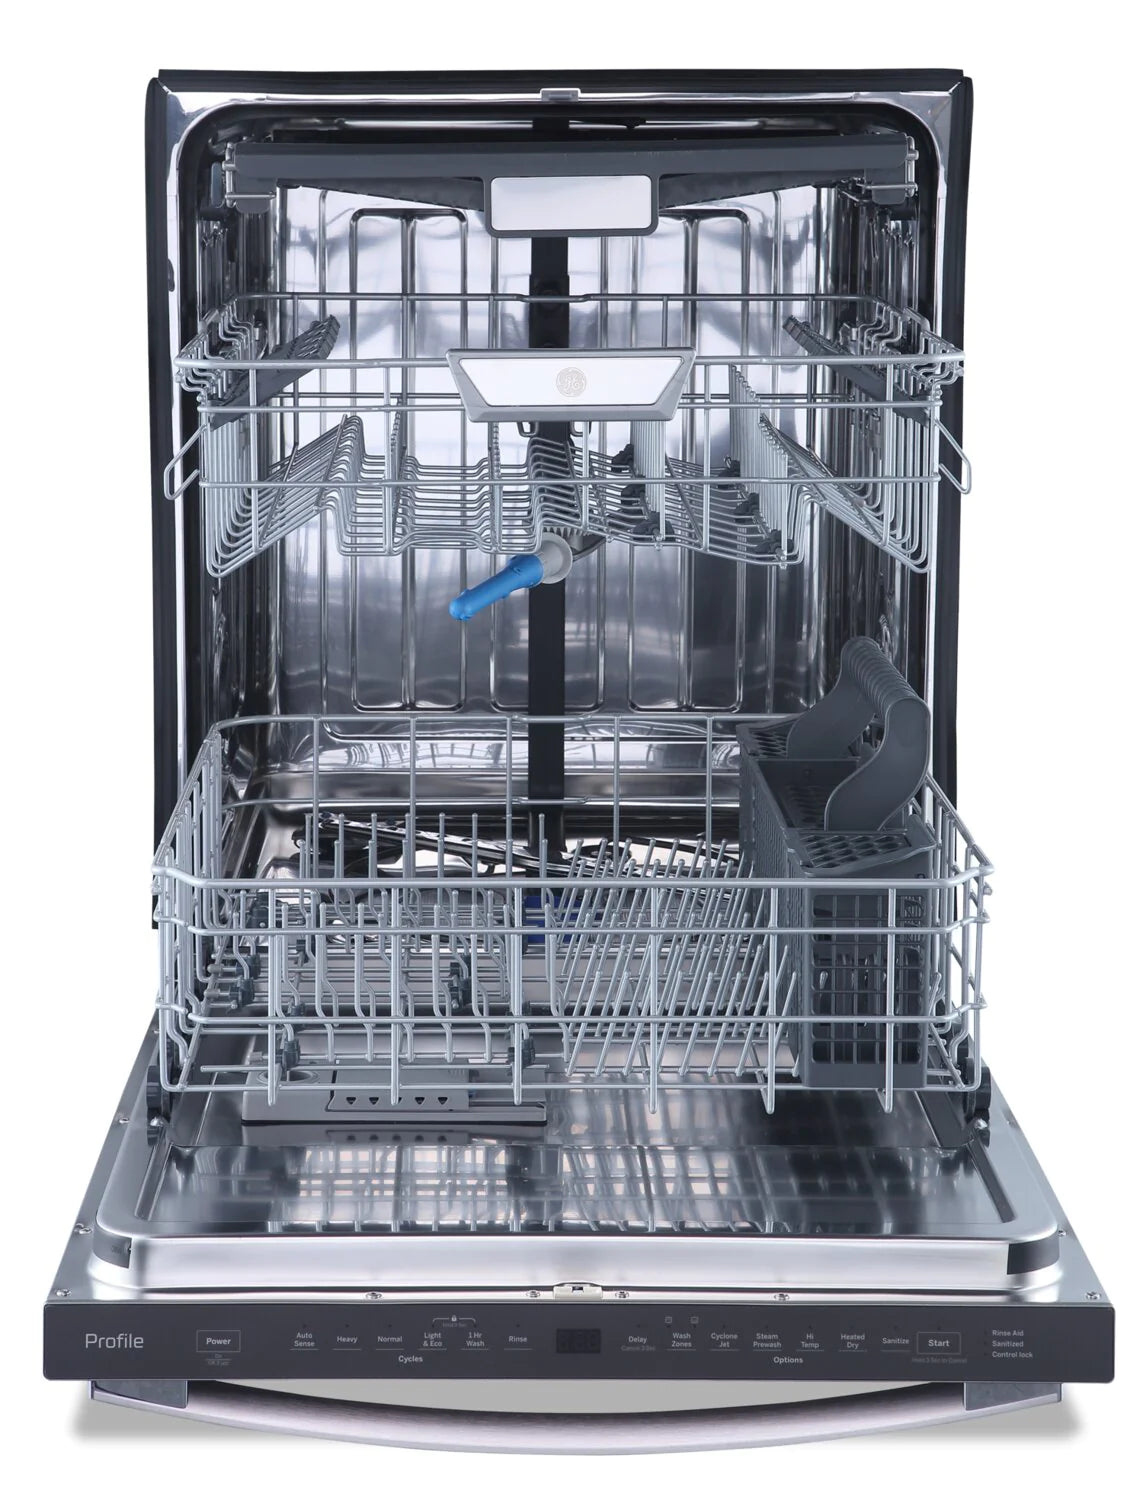 GE Dishwasher 24" Slate PBT865SMPES